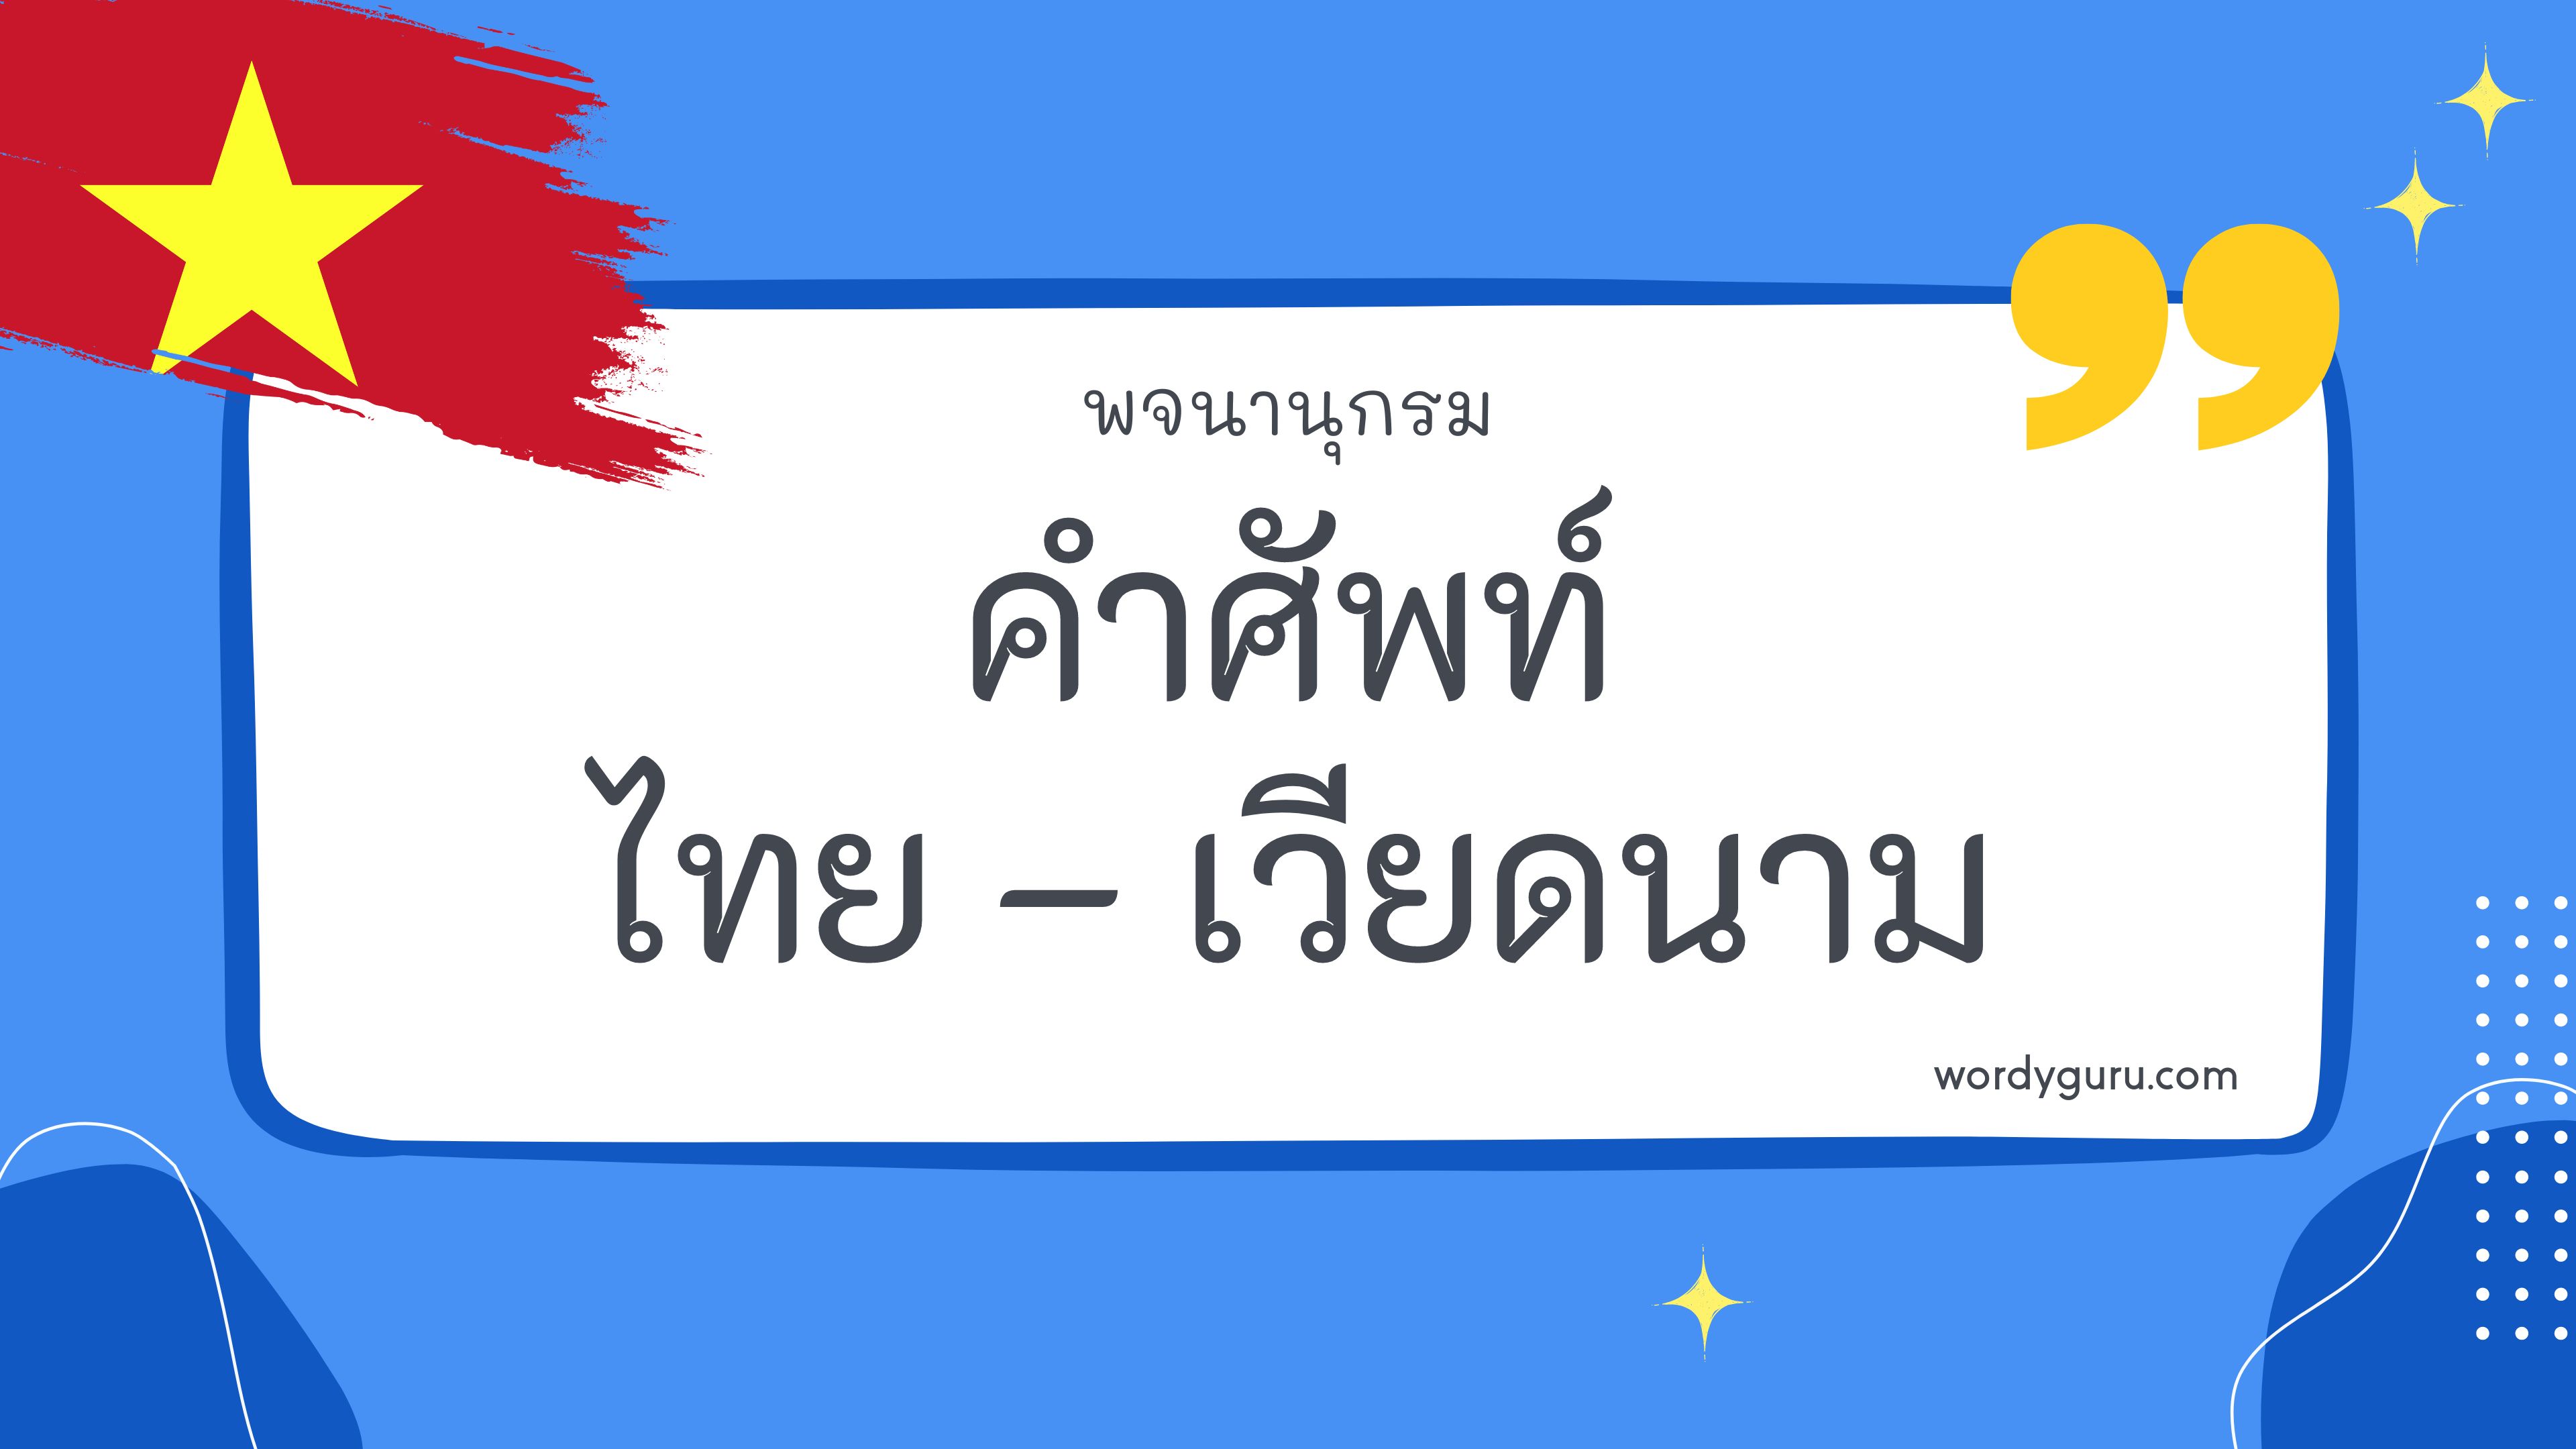 คำศัพท์ภาษาไทย - เวียดนาม 200 คำ ที่นิยมใช้ พบเห็นบ่อย ในชีวิตประจำวัน